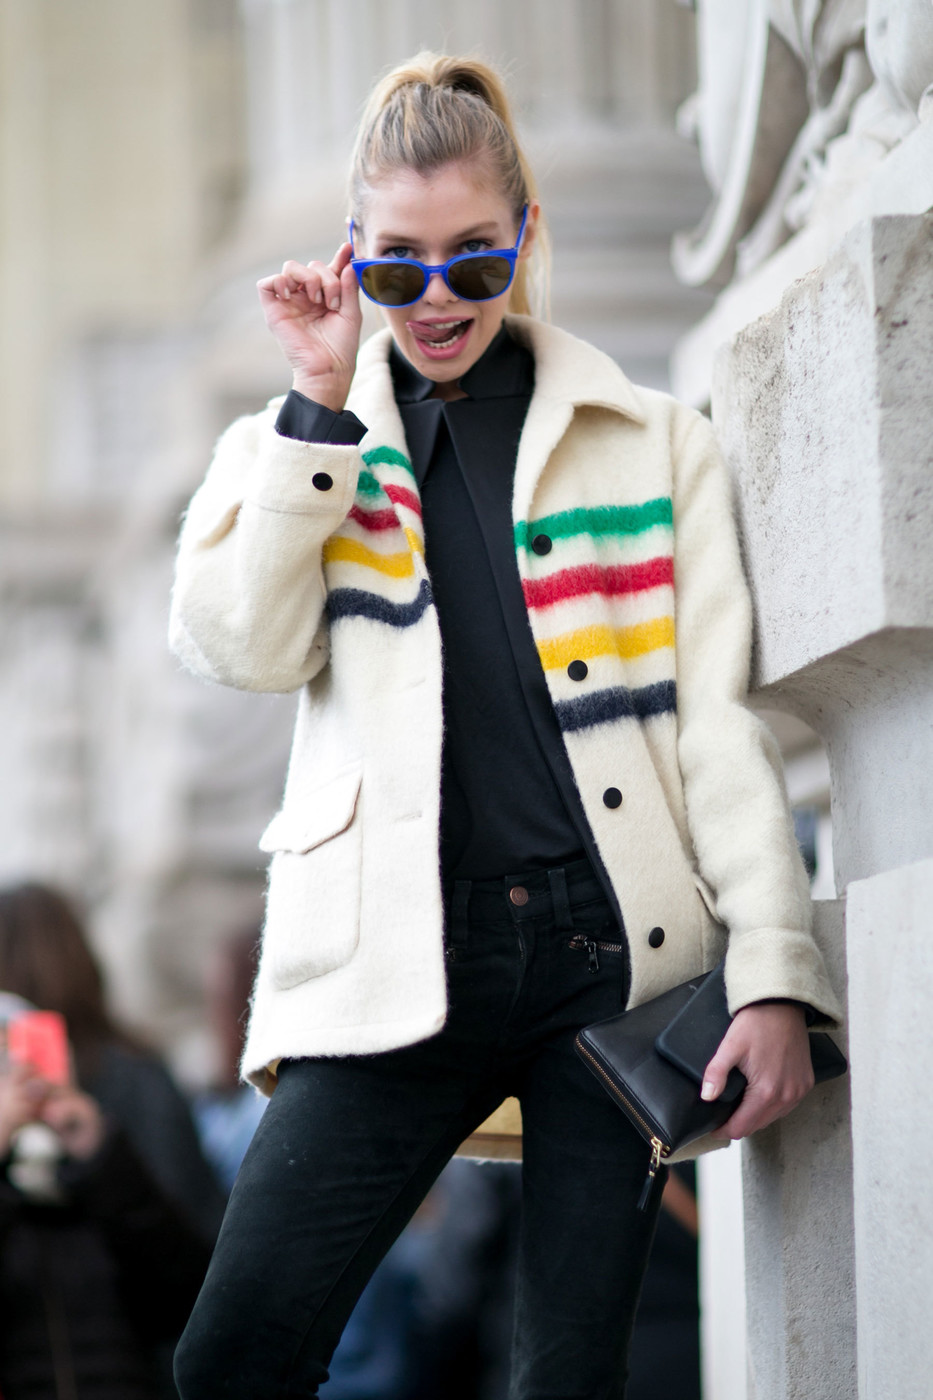 Street Style: Stella Maxwell's Fun-Loving Look